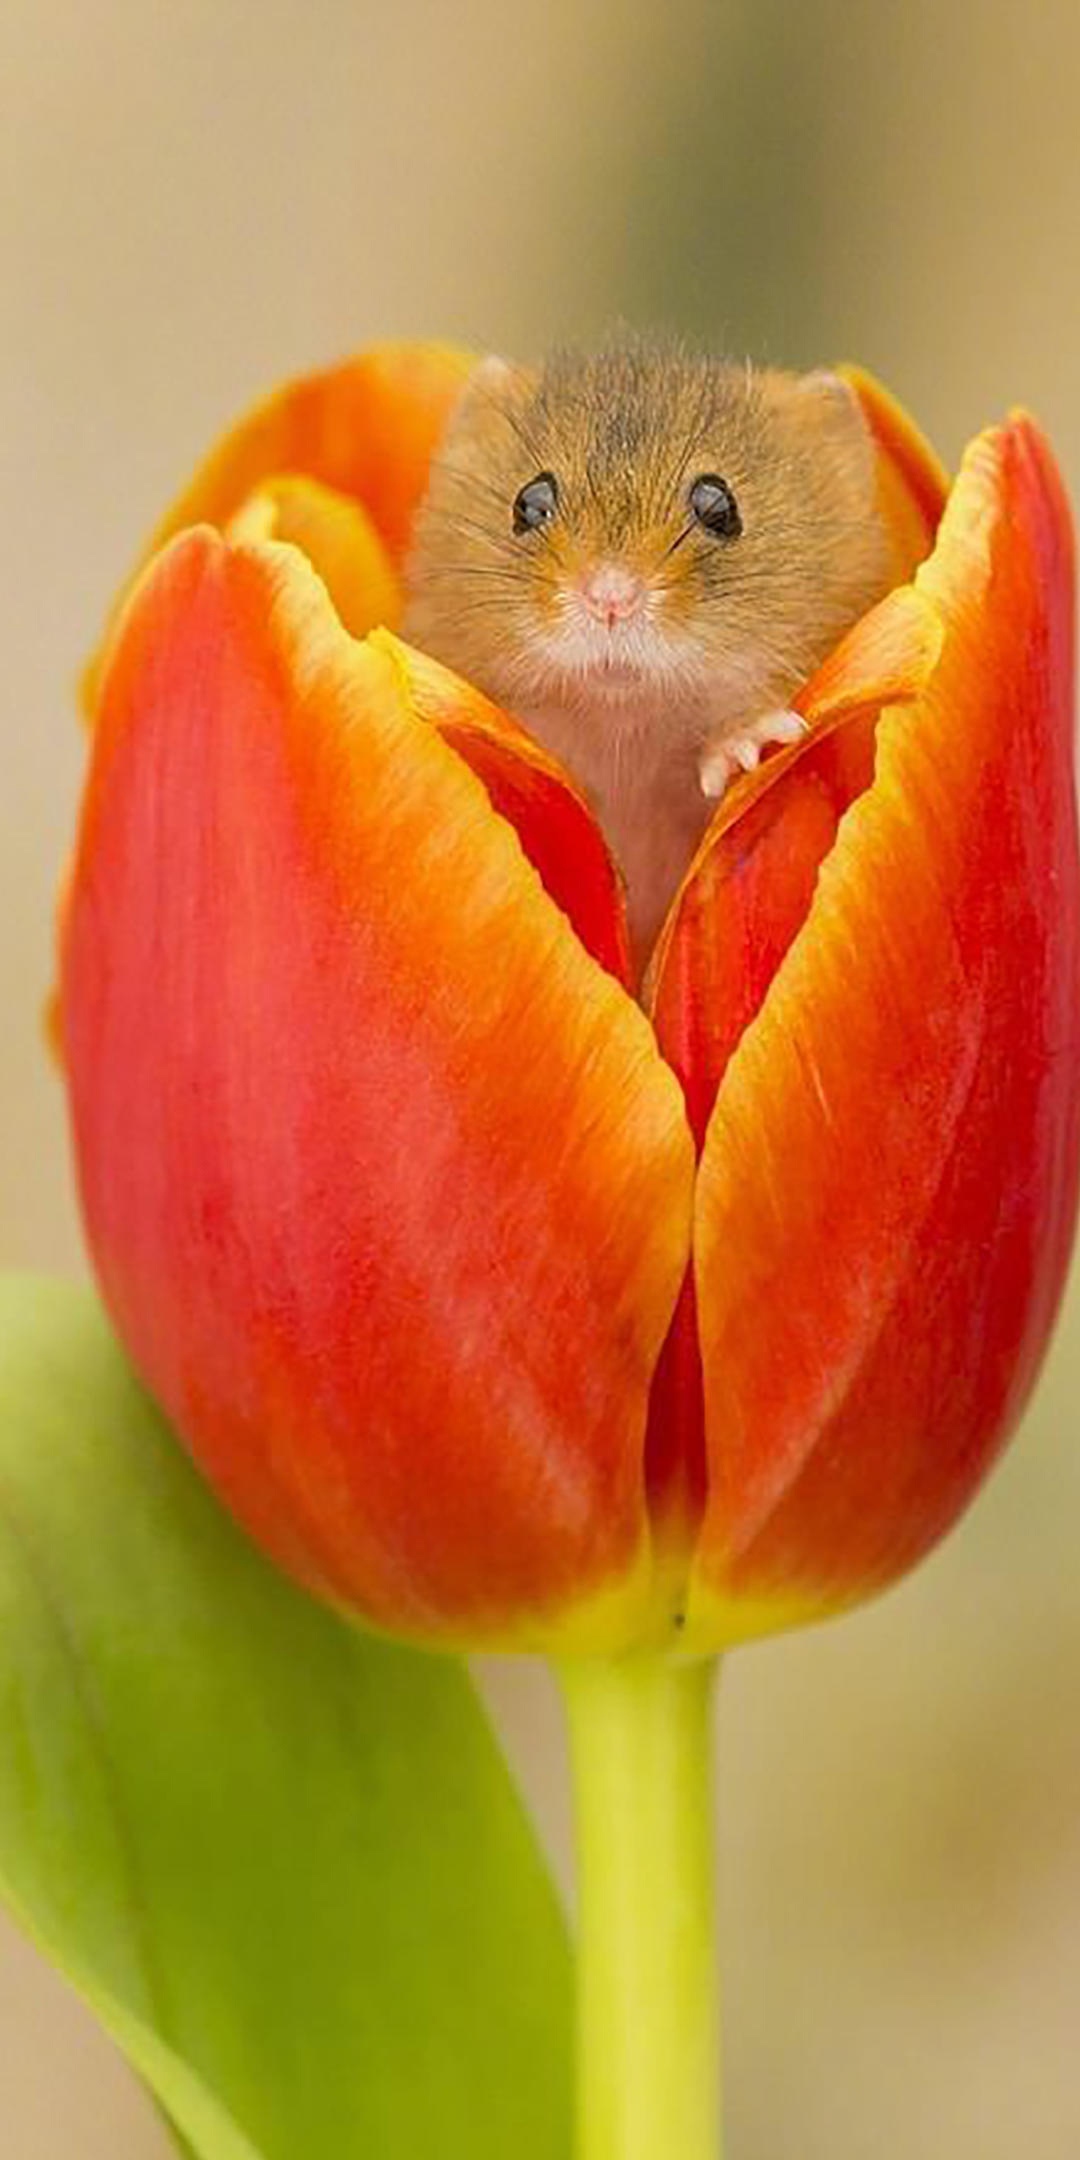 花苞里的可爱小仓鼠